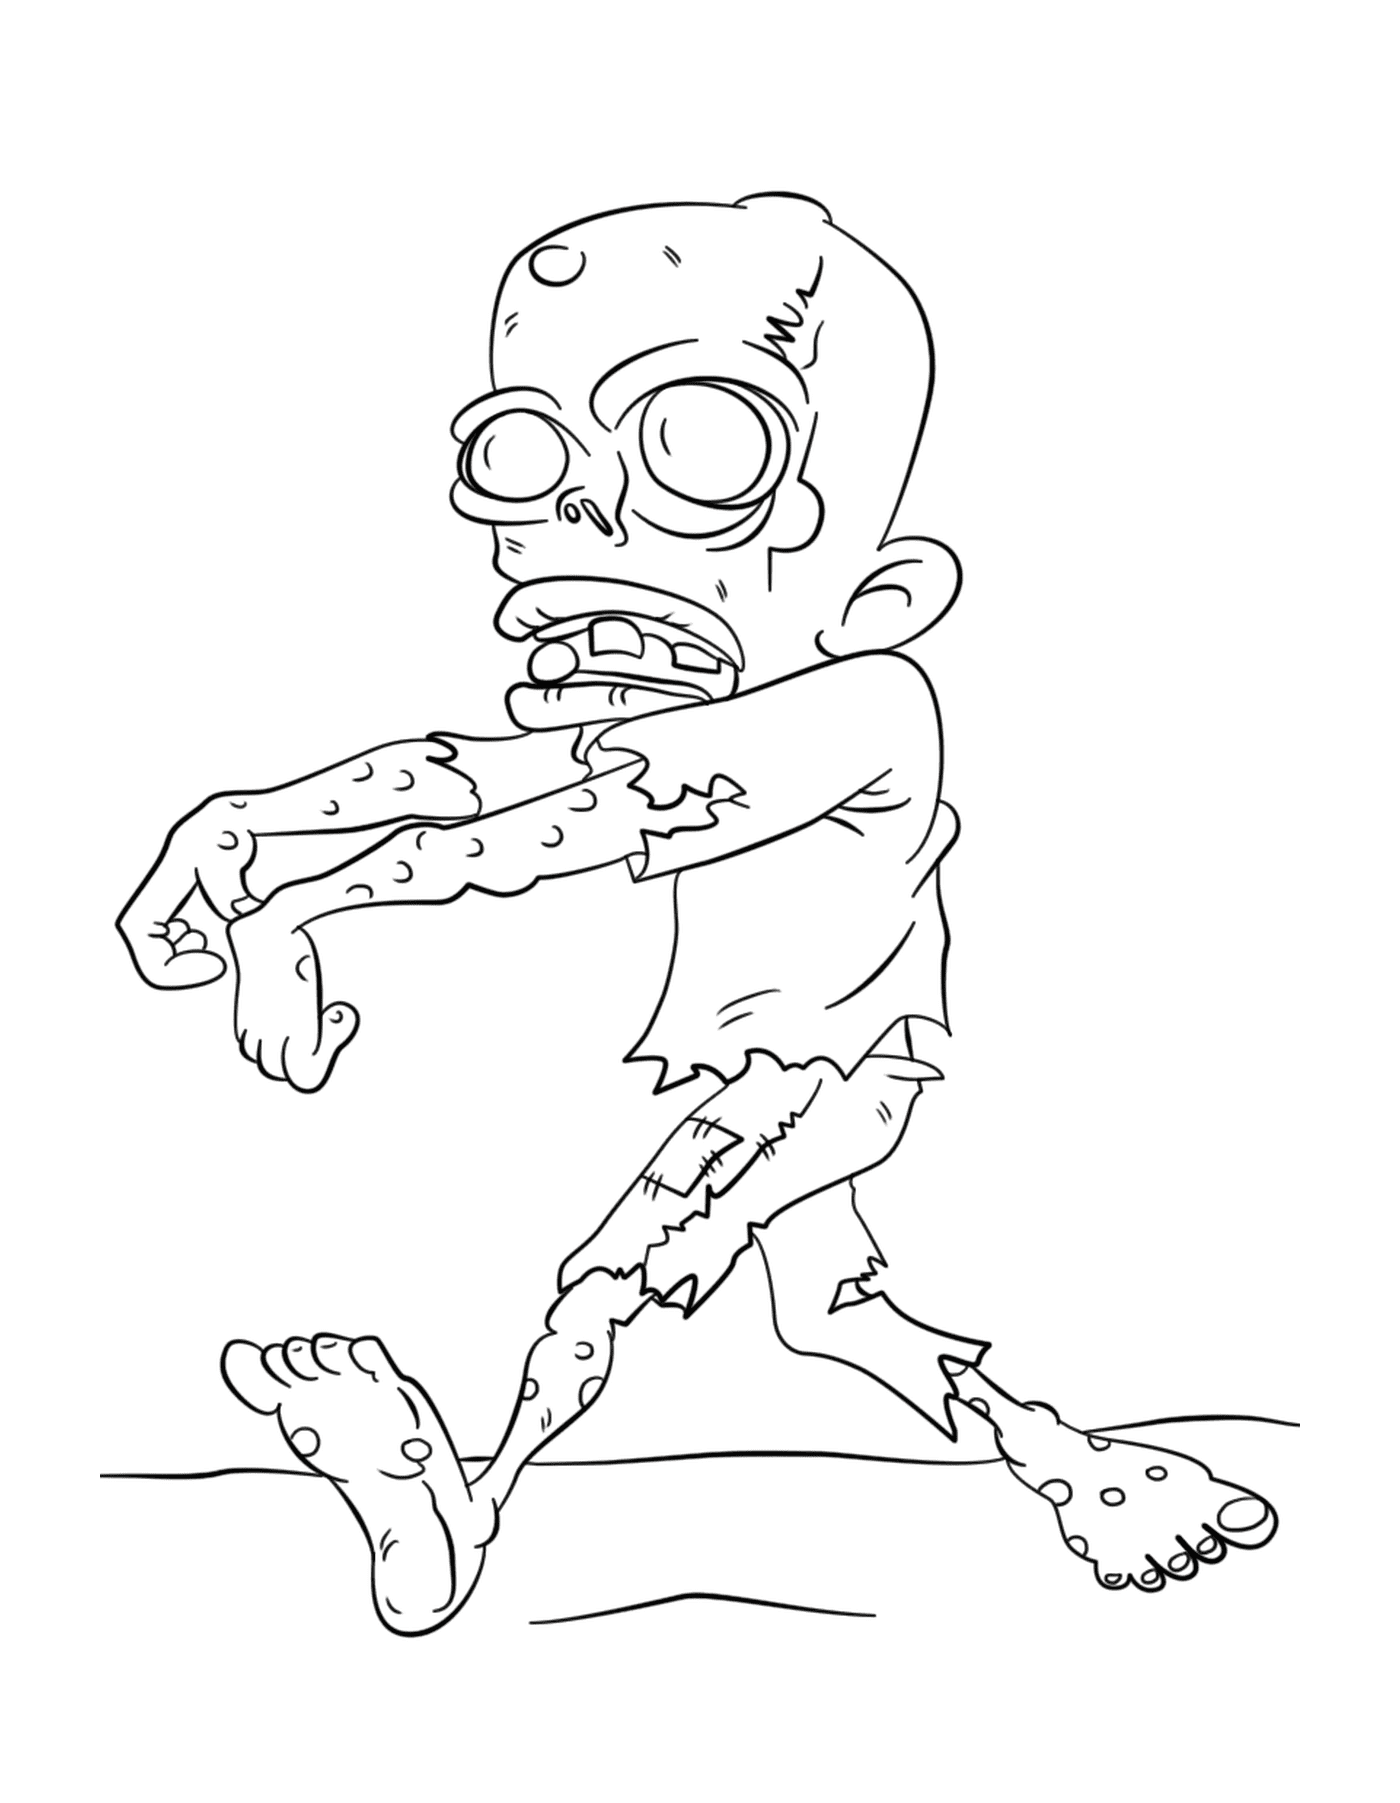  A walking zombie 